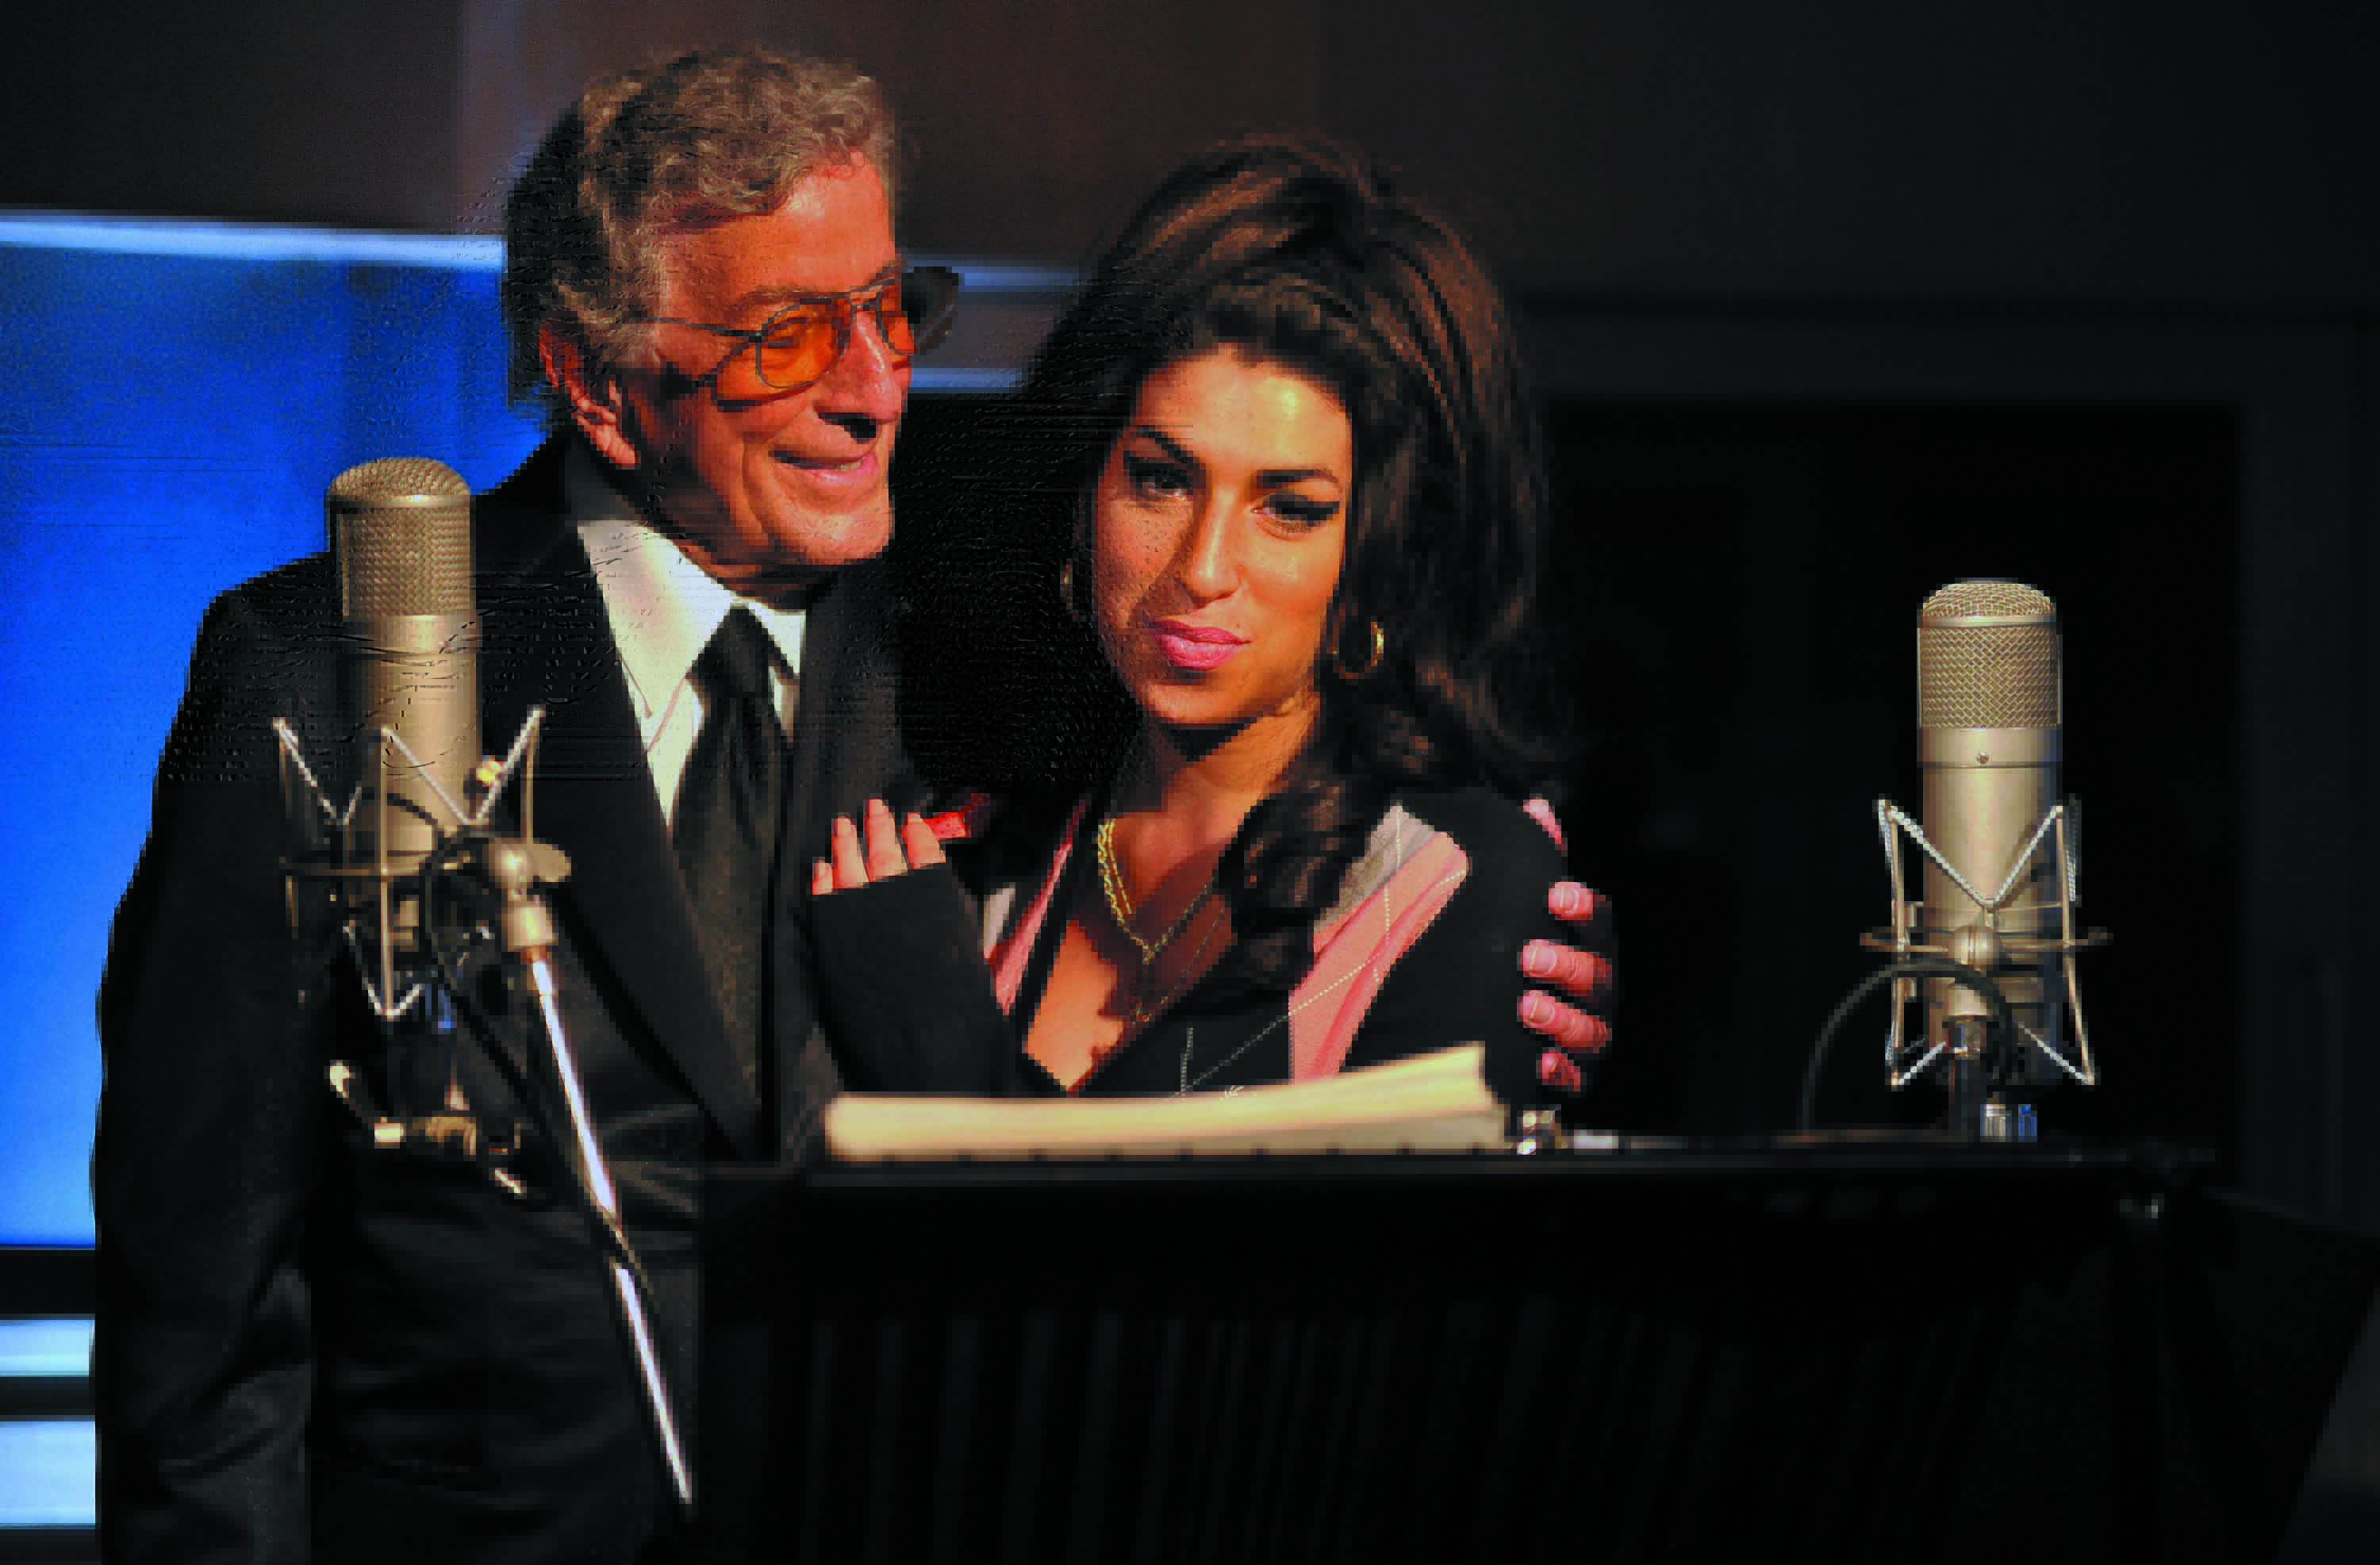 O Mitch Winehouse καταγράφει το χρονικό μιας πτώσης